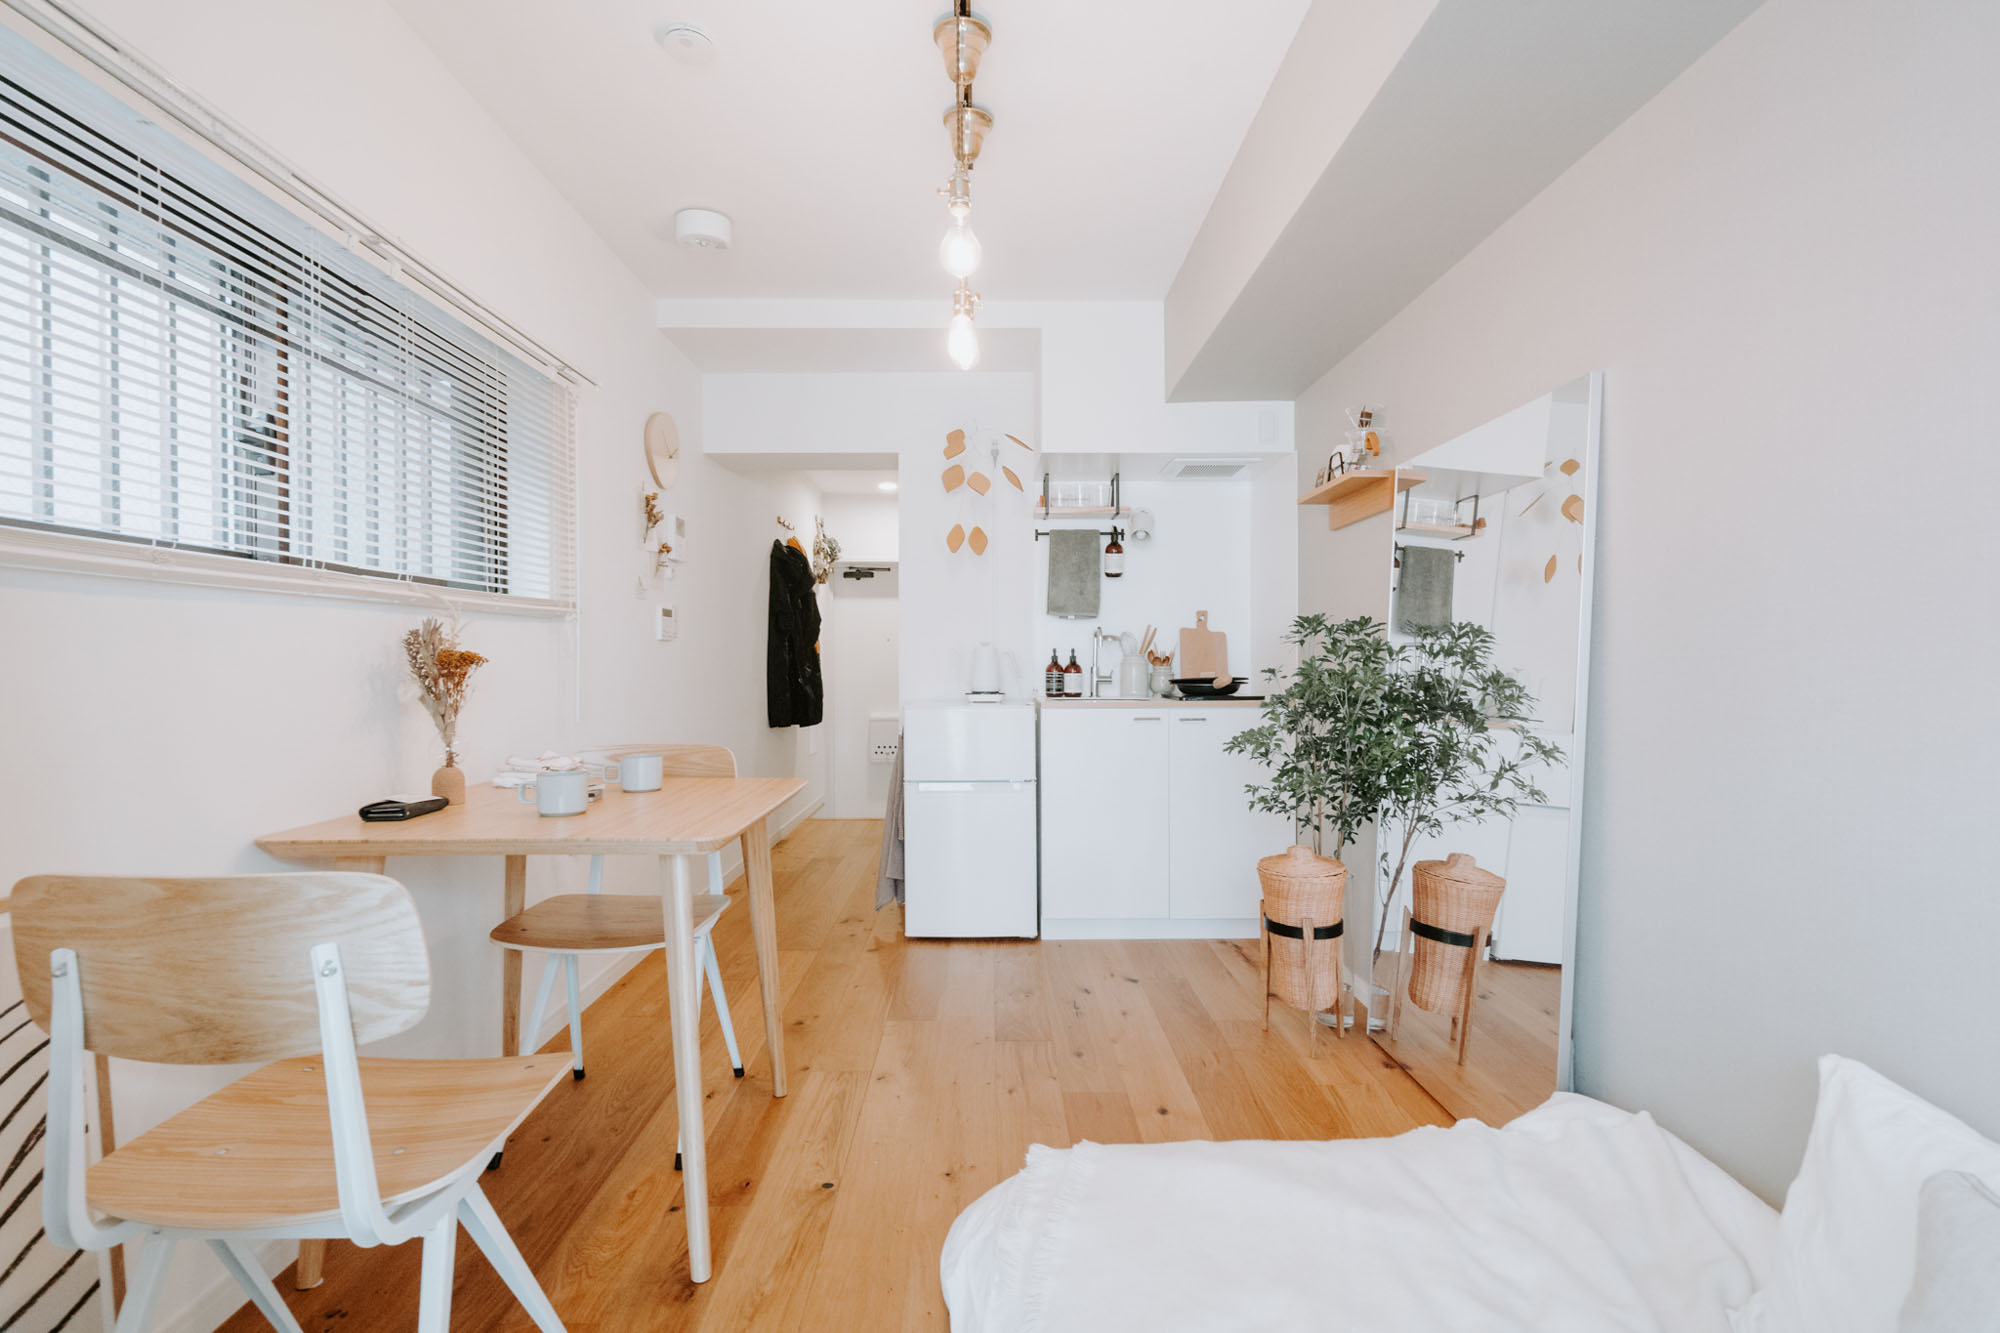 18㎡と小さな空間で二人暮らしをされているお部屋のキッチンでは、高さをぴったり合わせた冷蔵庫の上を作業スペースとして使われていました。冷蔵庫は amadana のもので、デザインも洗練されています。（このお部屋はこちら）